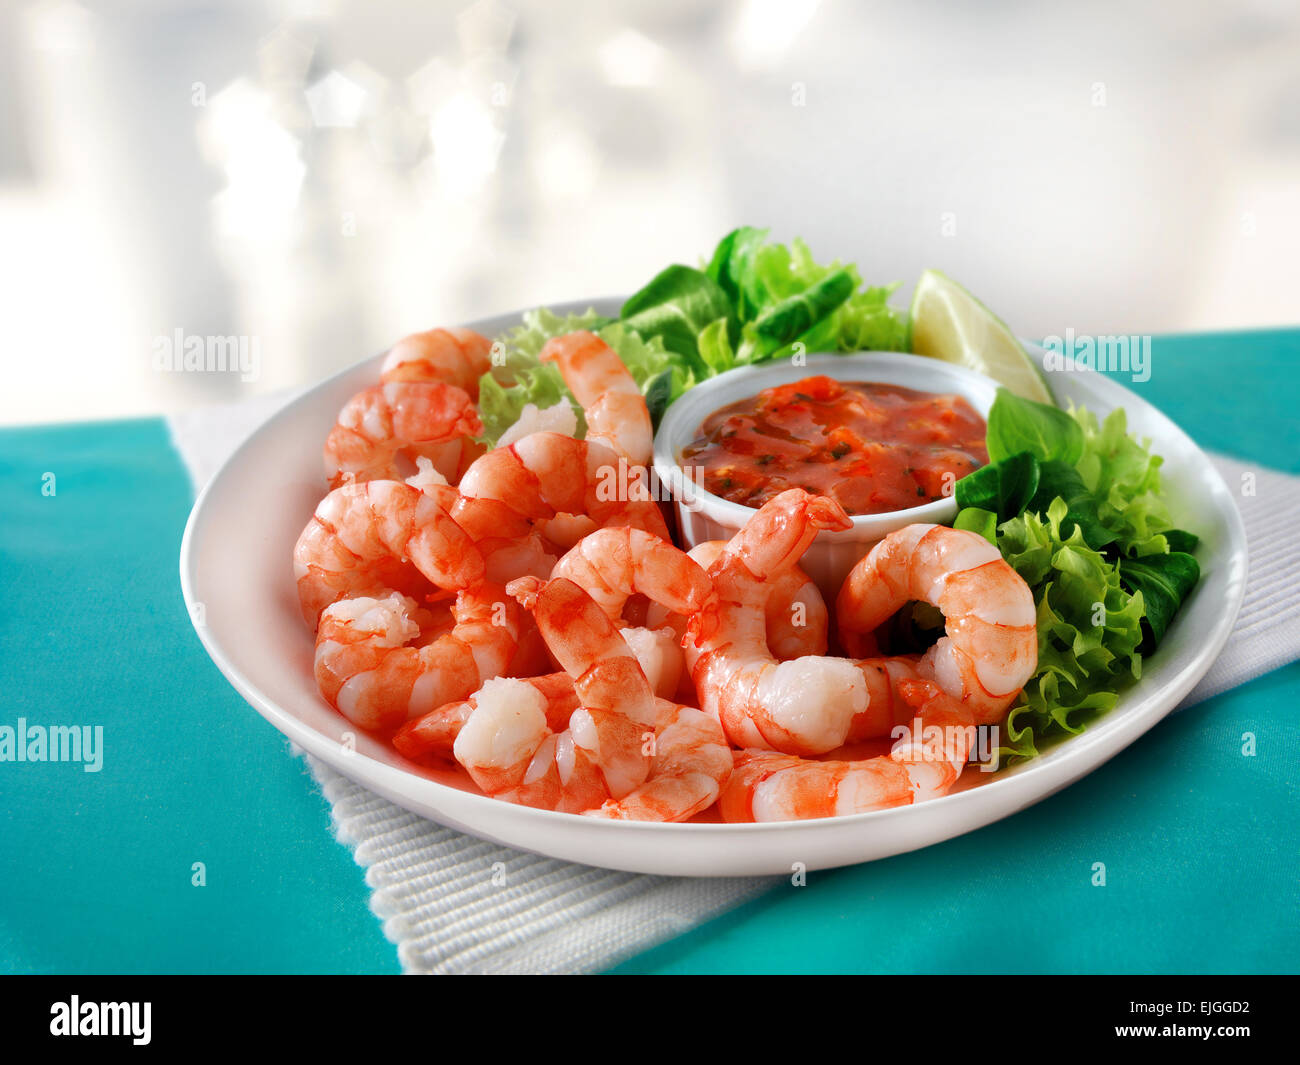 Crevettes tigrées cuites, salade et sauce tomate, servies sur une assiette prête à manger Banque D'Images